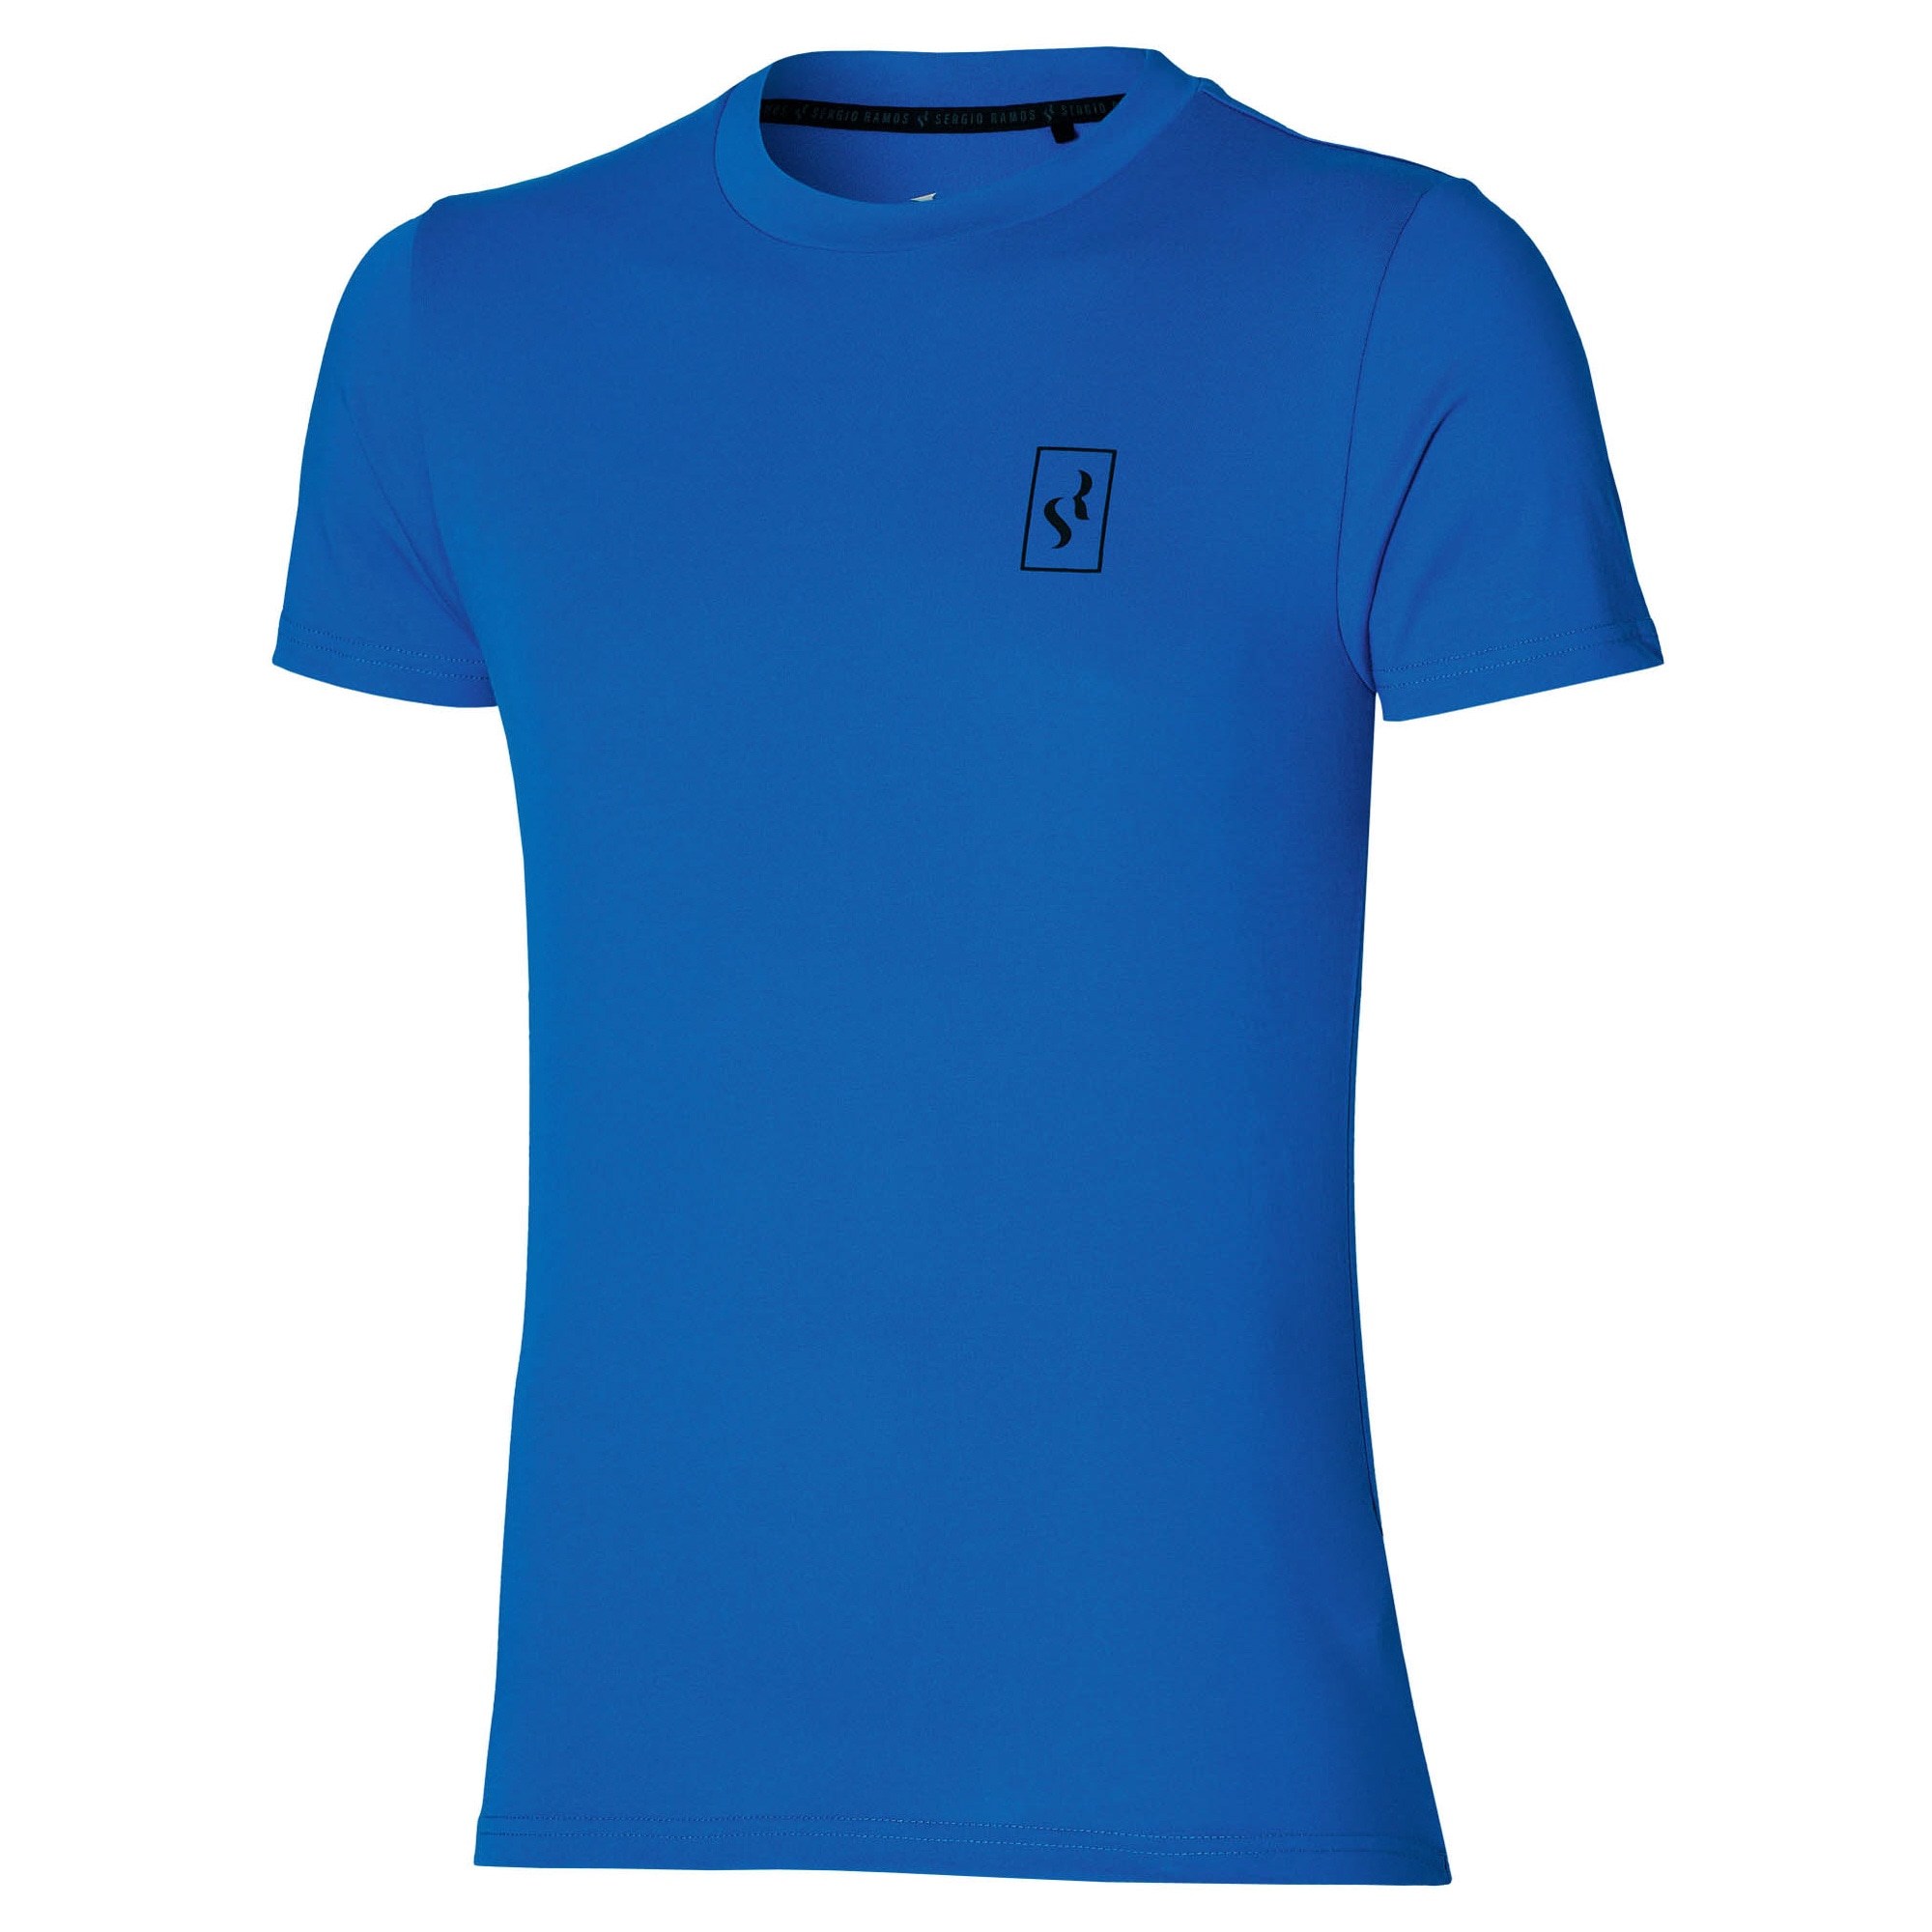 SR4 半袖Tシャツ[ユニセックス]|P2MA2S50|セルヒオ・ラモス選手 